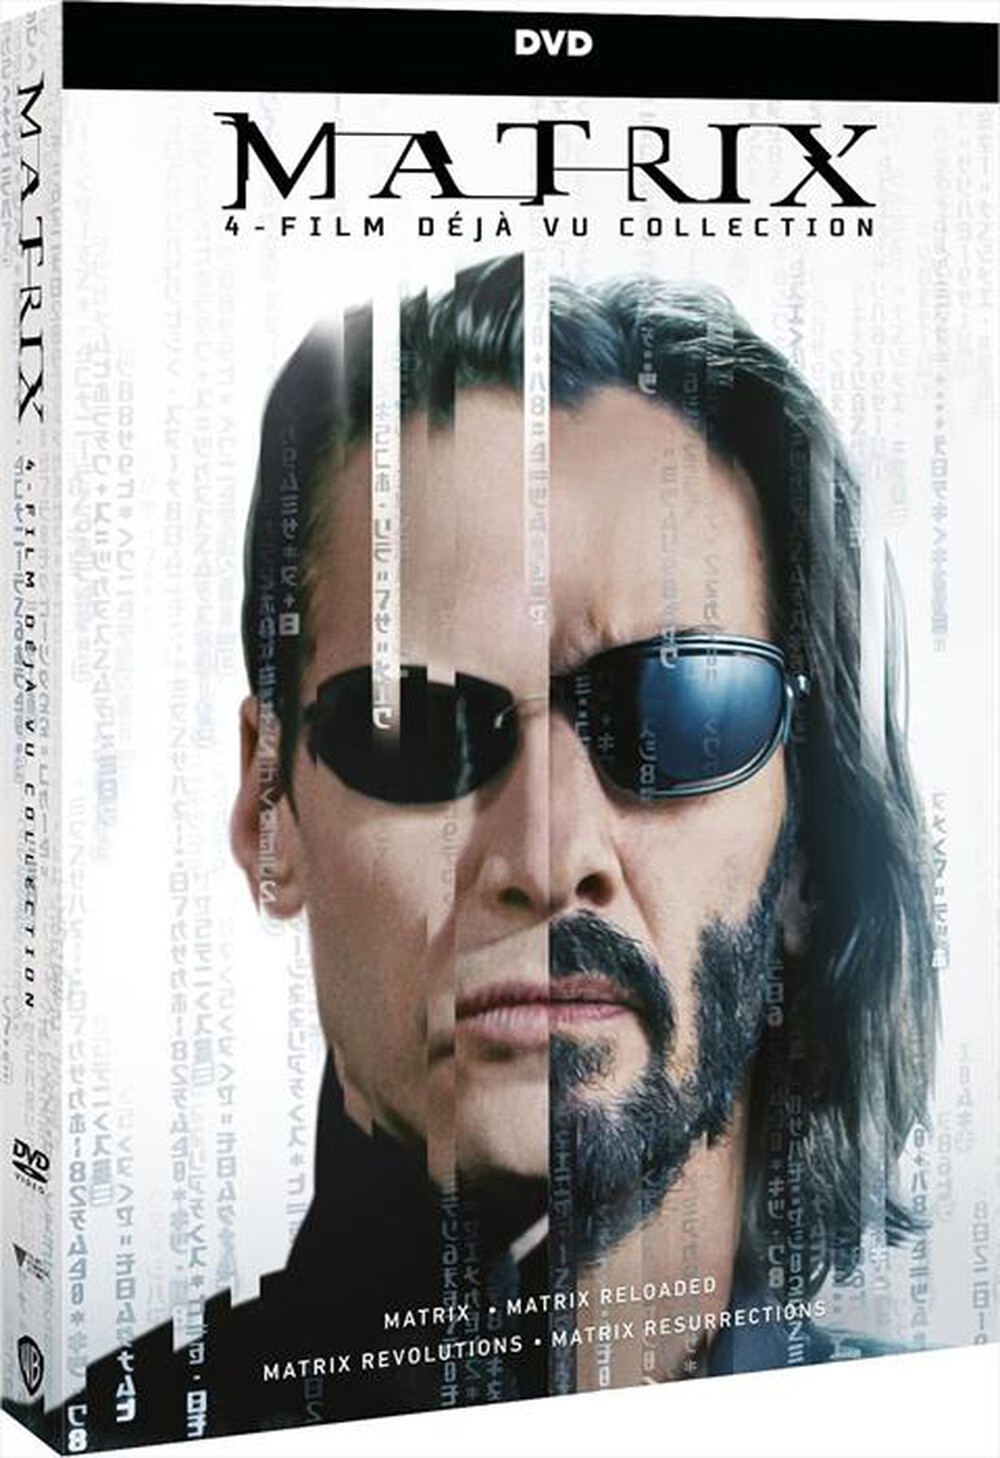 "WARNER HOME VIDEO - Matrix 4 Film Deja-Vu Collection (4 Dvd)"